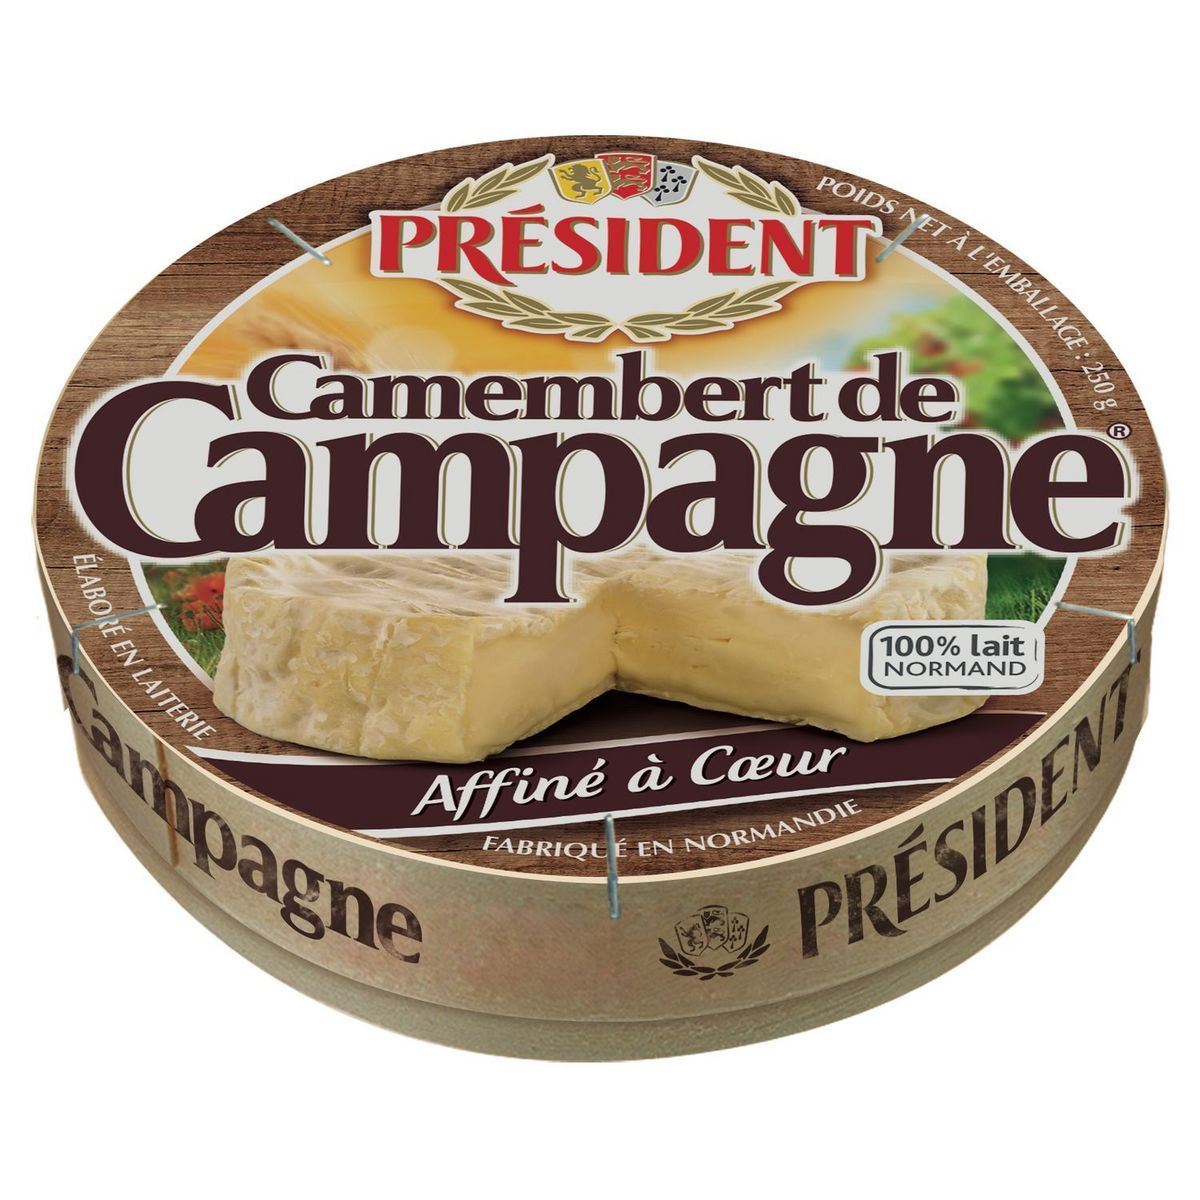 CAMEMBERT DE CAMPAGNE PRÉSIDENT